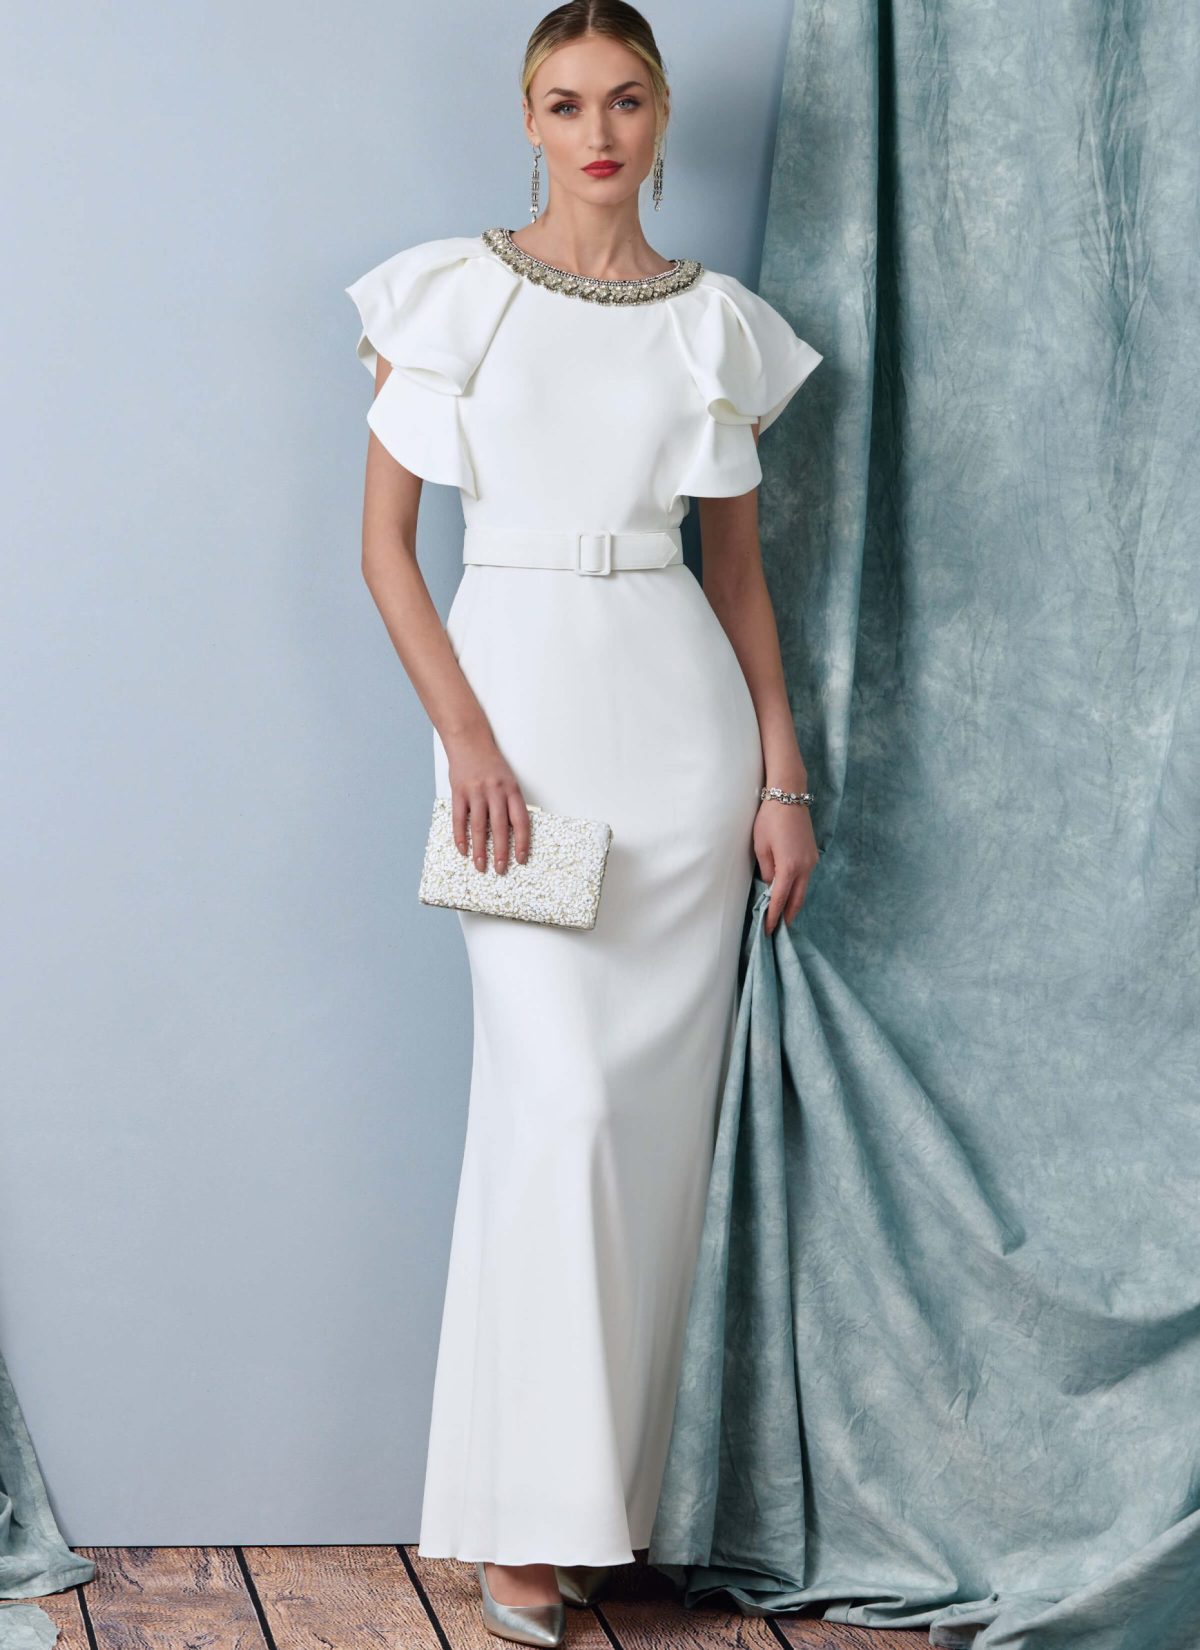 Vogue Patterns V1919 Misses' Full Length Dress with Belt by Badgley Mischka